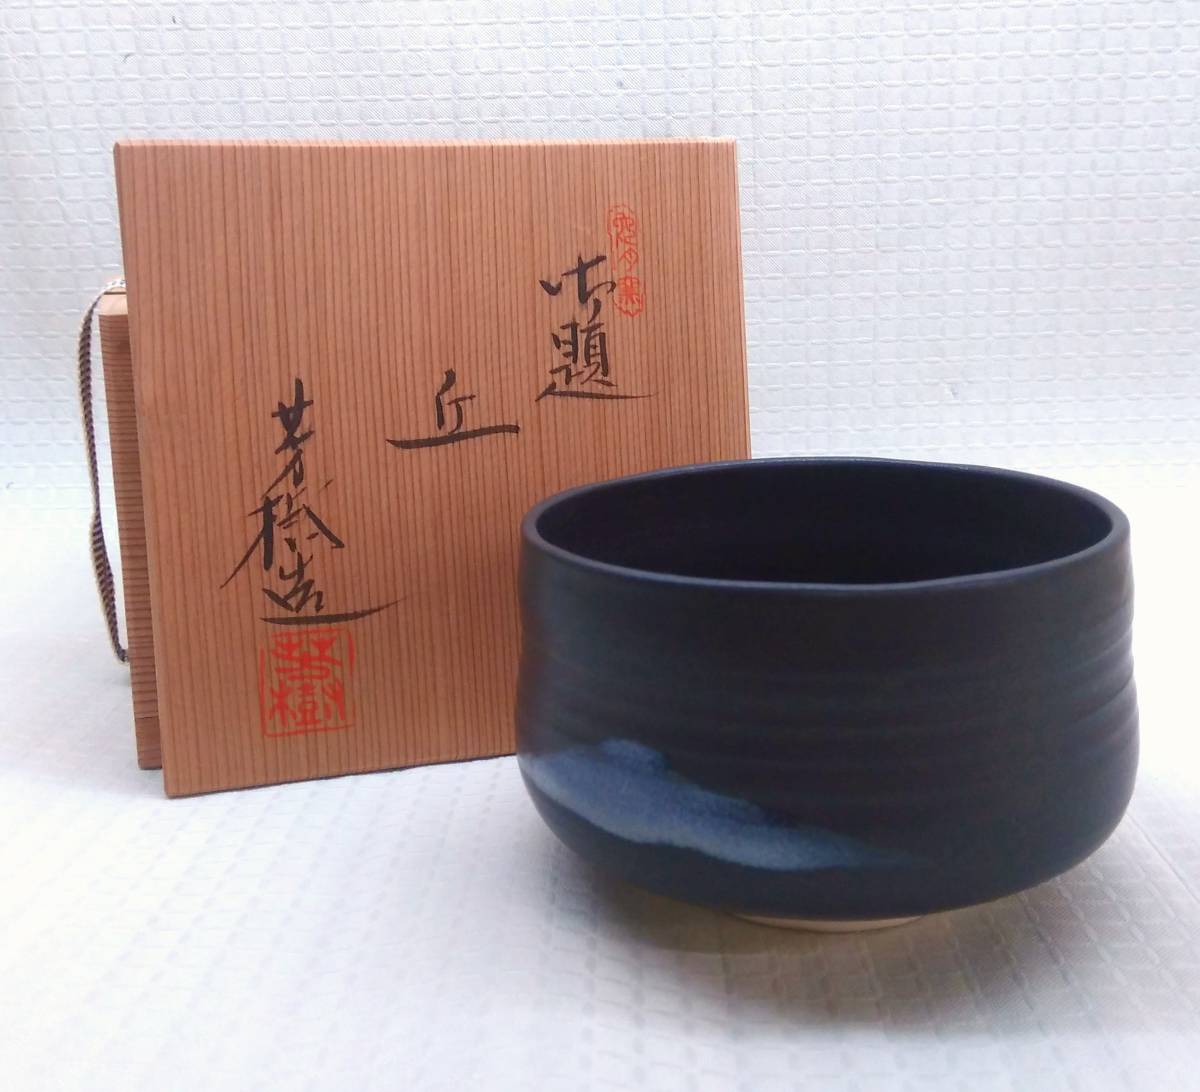 桐箱付] 兎月窯御題丘杉浦芳樹造茶碗茶器茶道具黄共布共箱和食器日本 